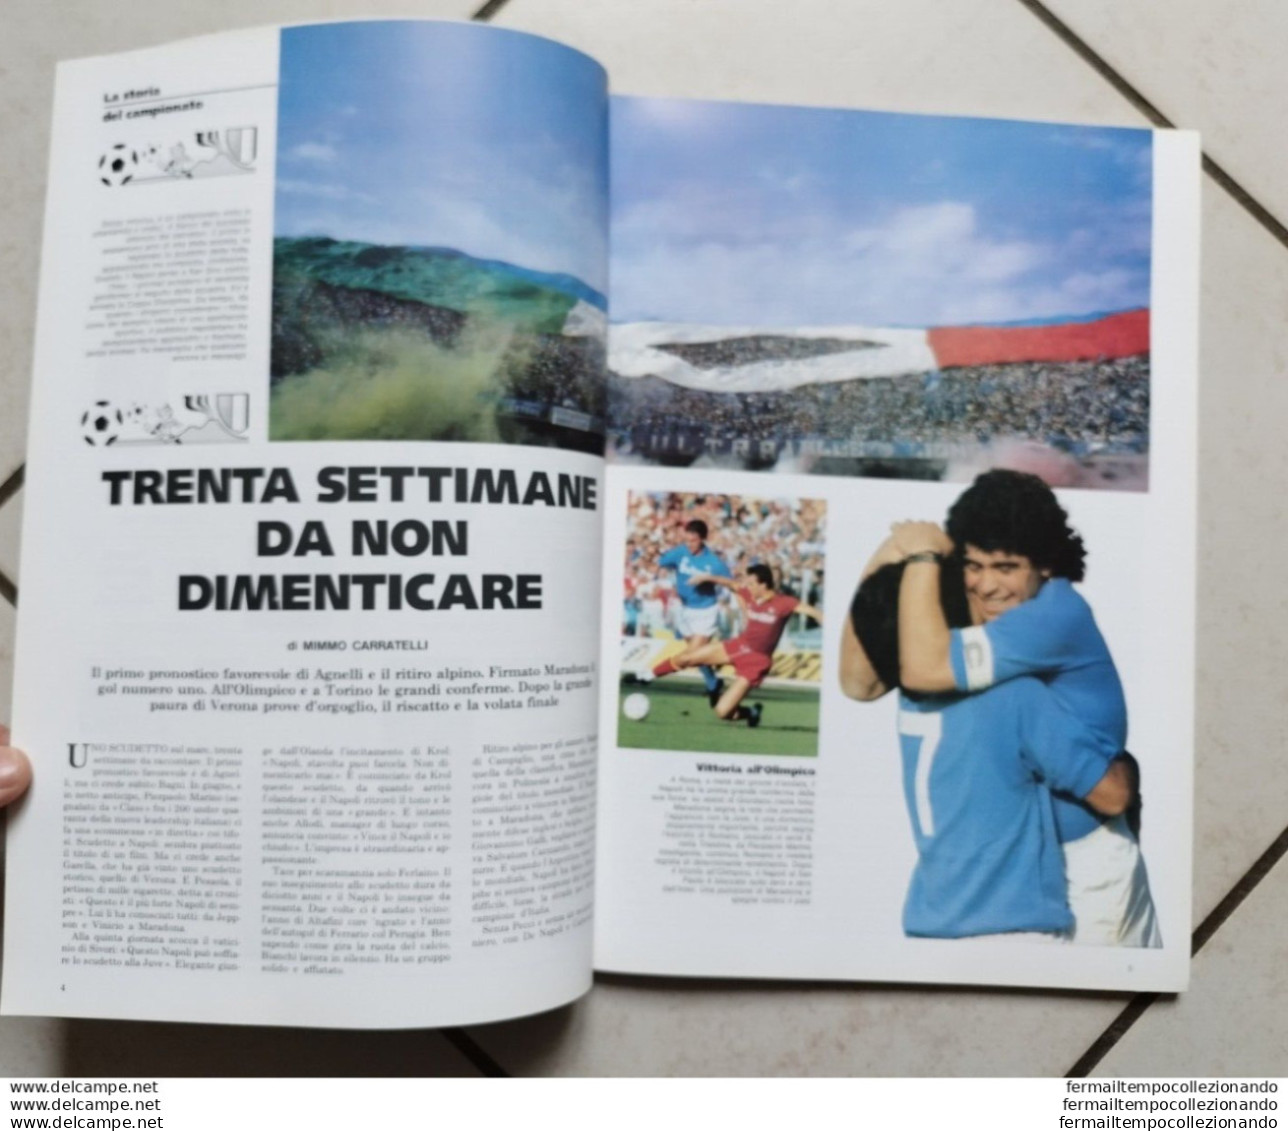 Bo Il Mattino L'ombra Azzurra Del Vesuvio Maradona Supplemento Al Mattino 1987 - Bücher